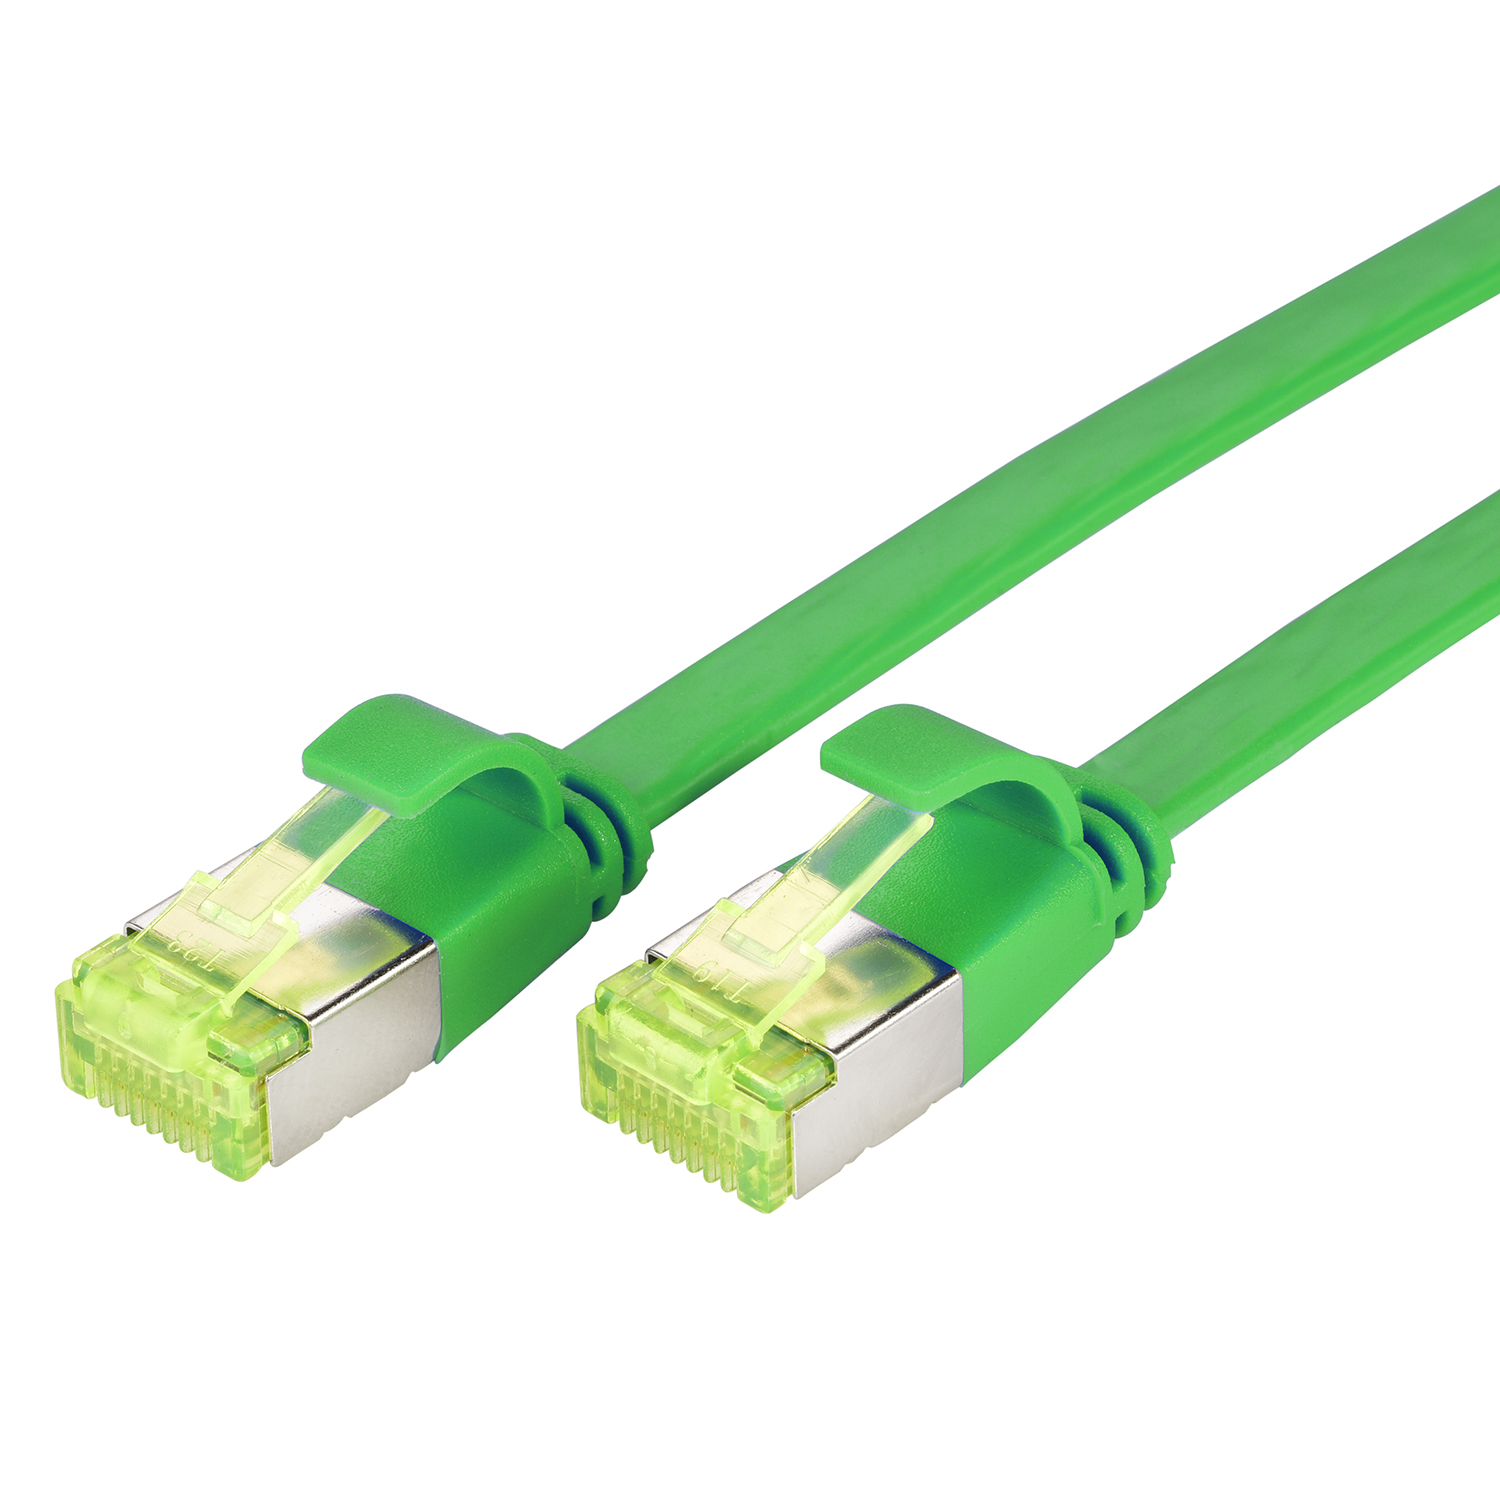 TPFNET 10m Patchkabel / m grün, U/FTP Netzwerkkabel, Flachkabel GBit, 10 10